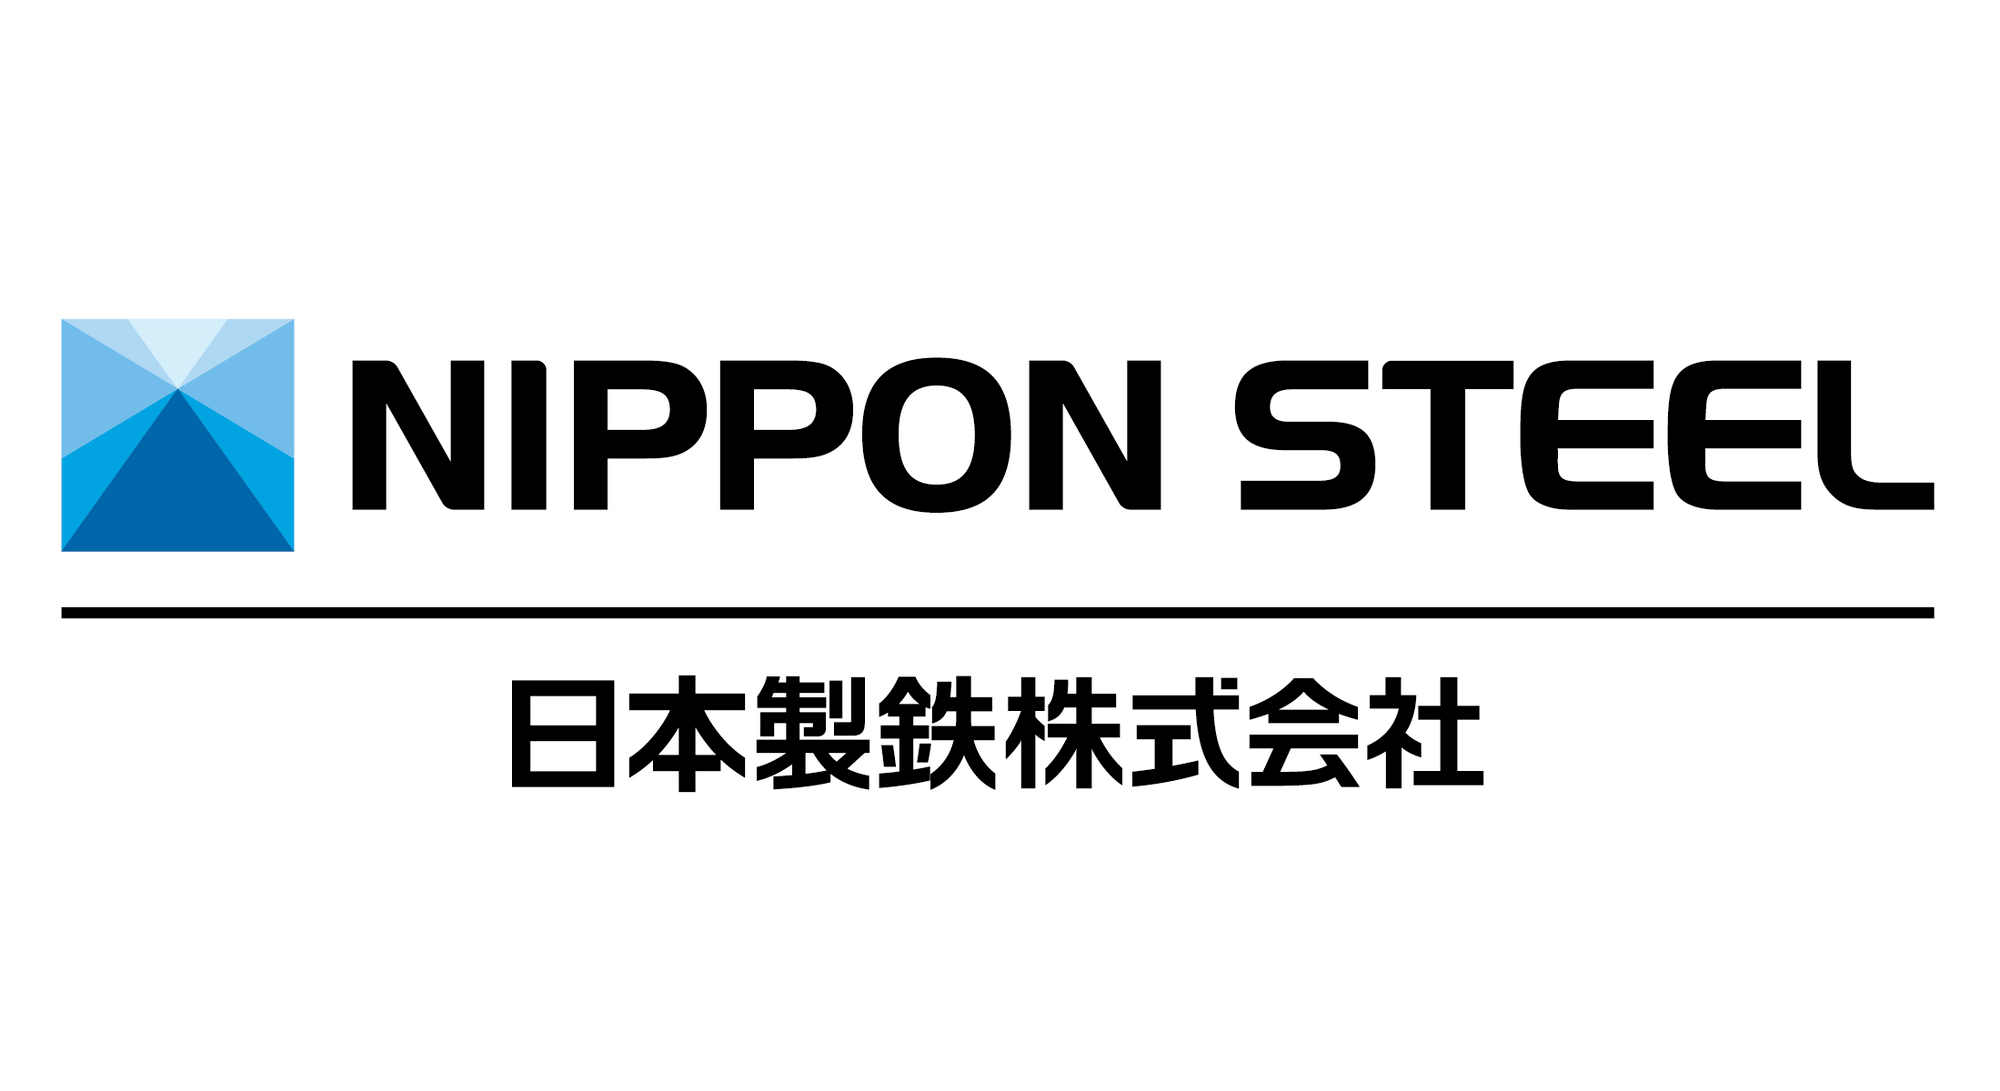 日本製鉄株式会社